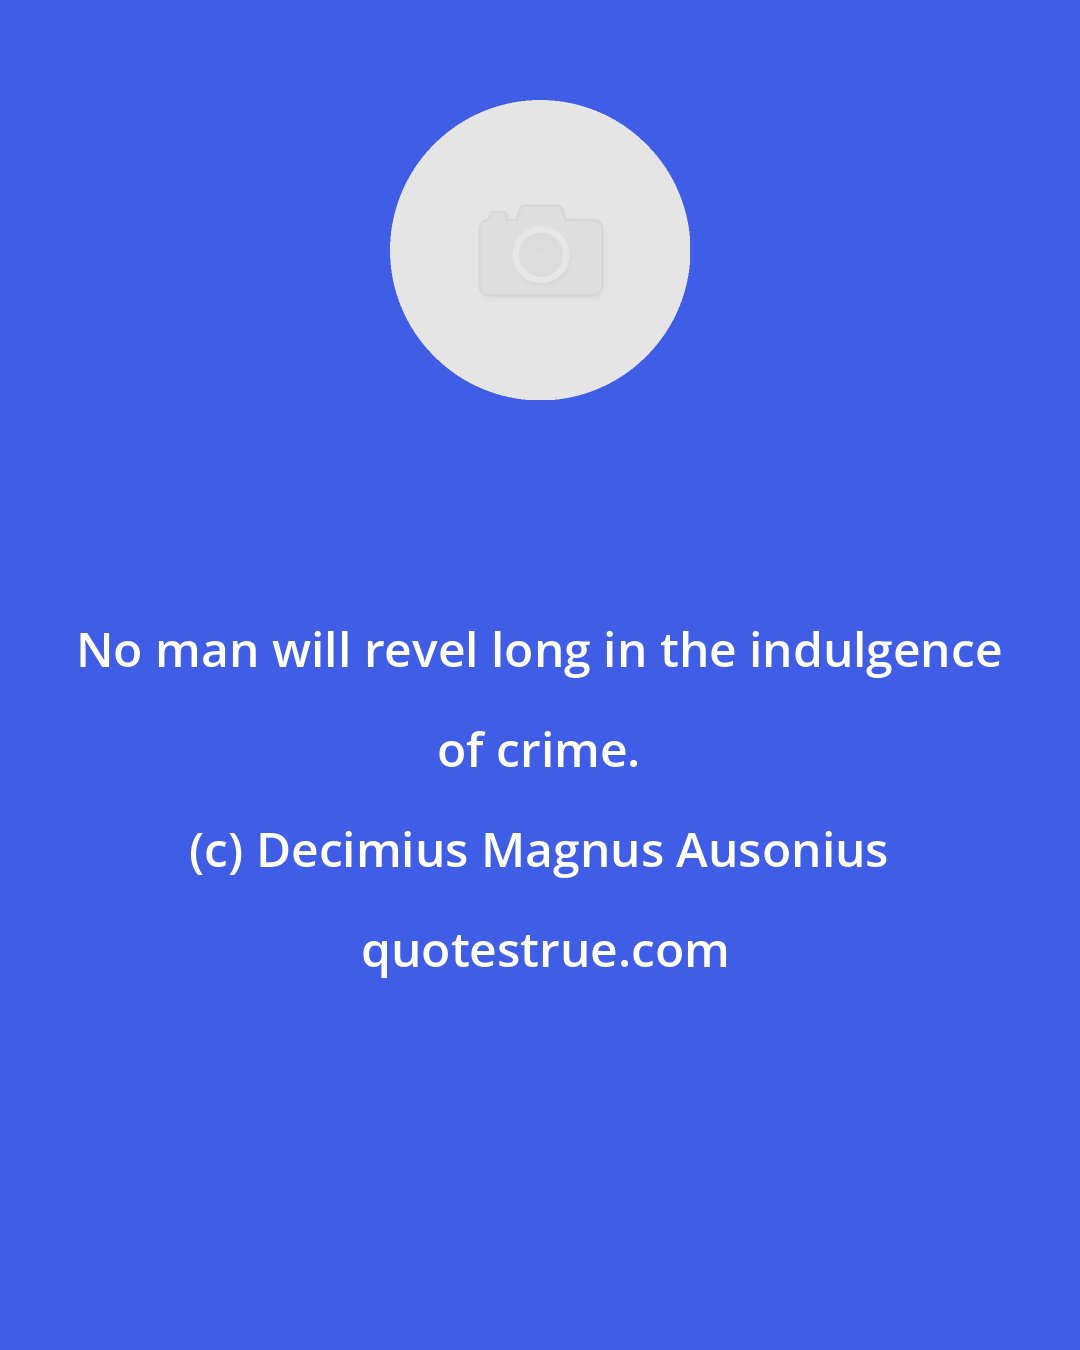 Decimius Magnus Ausonius: No man will revel long in the indulgence of crime.